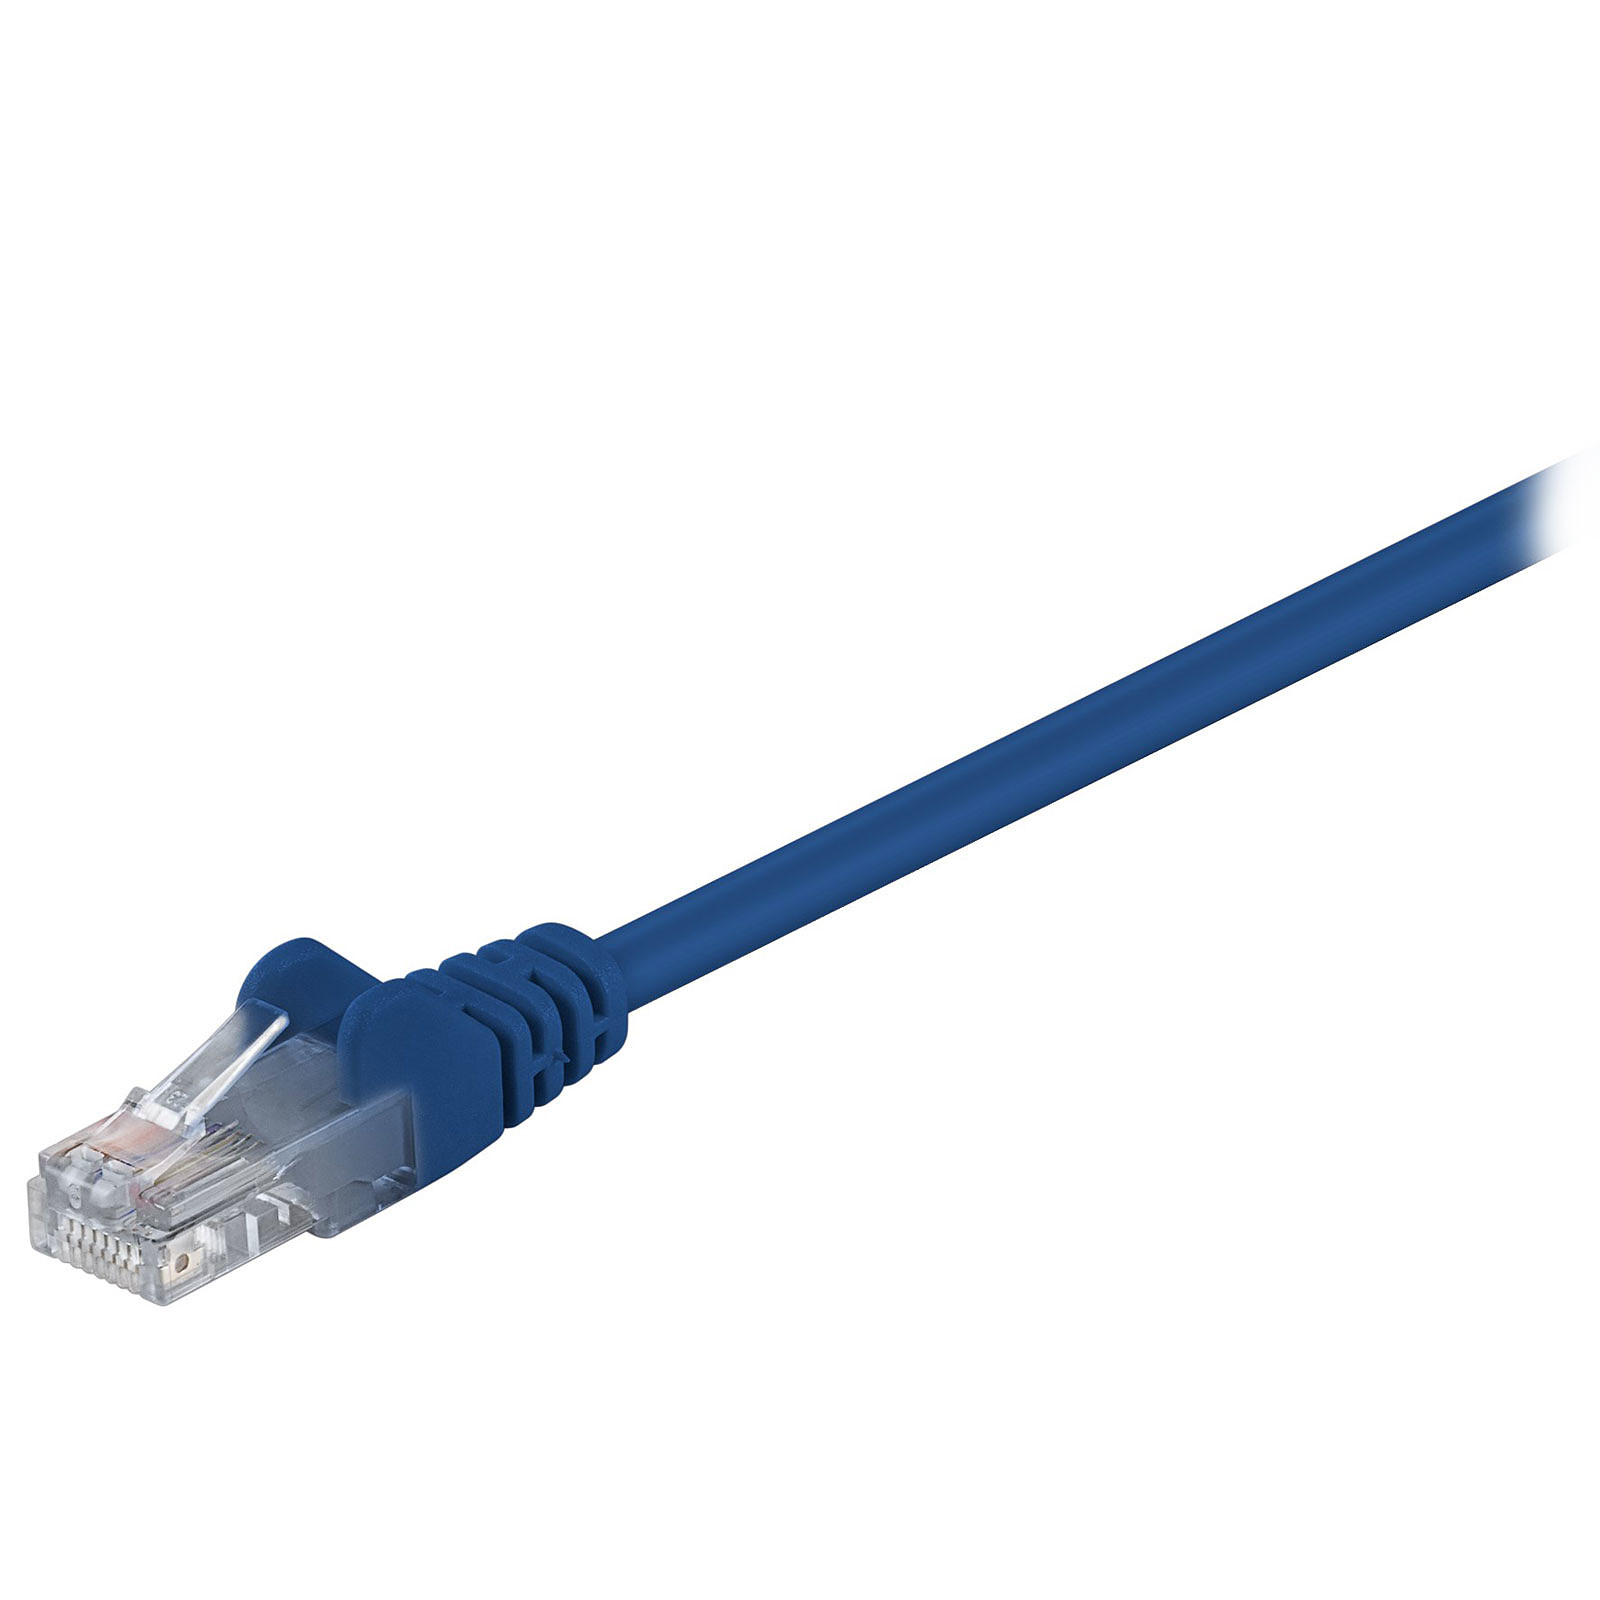 Cable RJ45 categorie 5e U/UTP 0.5 m (Bleu) - Cable RJ45 Generique